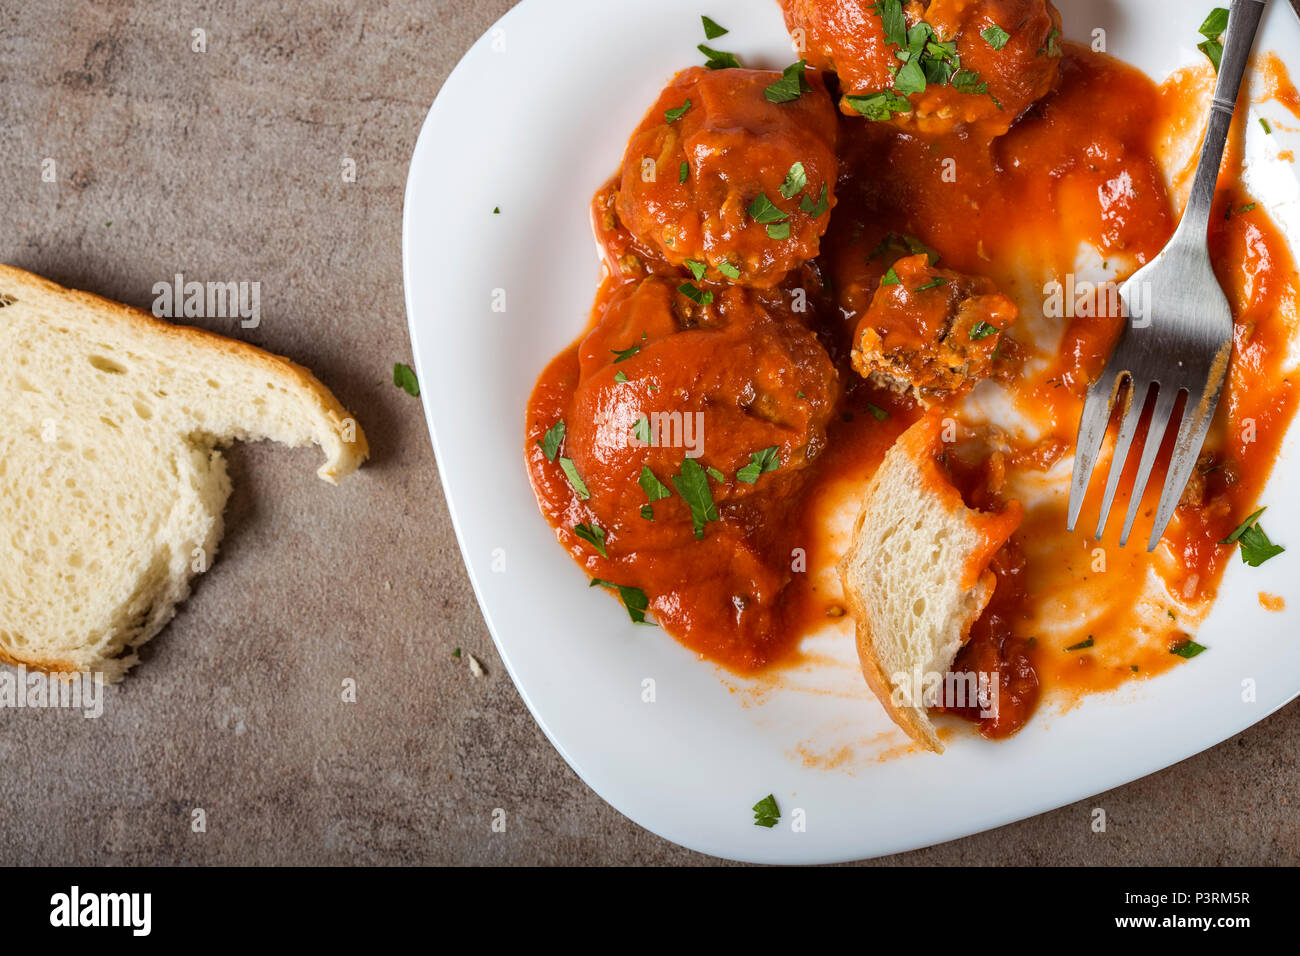 Hackfleischbällchen mit Tomatensauce und frisch gehackte Petersilie auf Teller mit Brot - Ansicht von oben Stockfoto